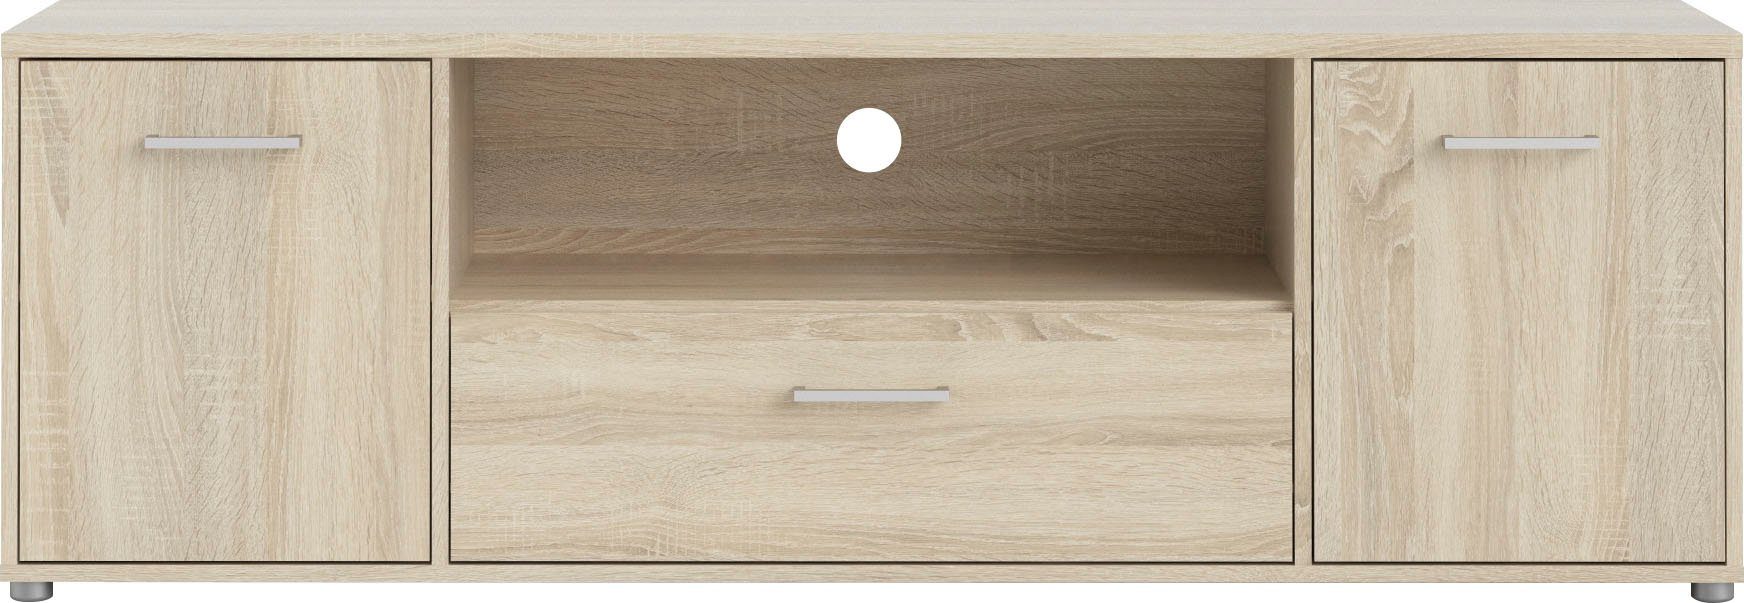 Home affaire TV-Board Match, mit einer Kabeldurchführung, pflegeleichte Oberfläche, Breite 155,6 cm